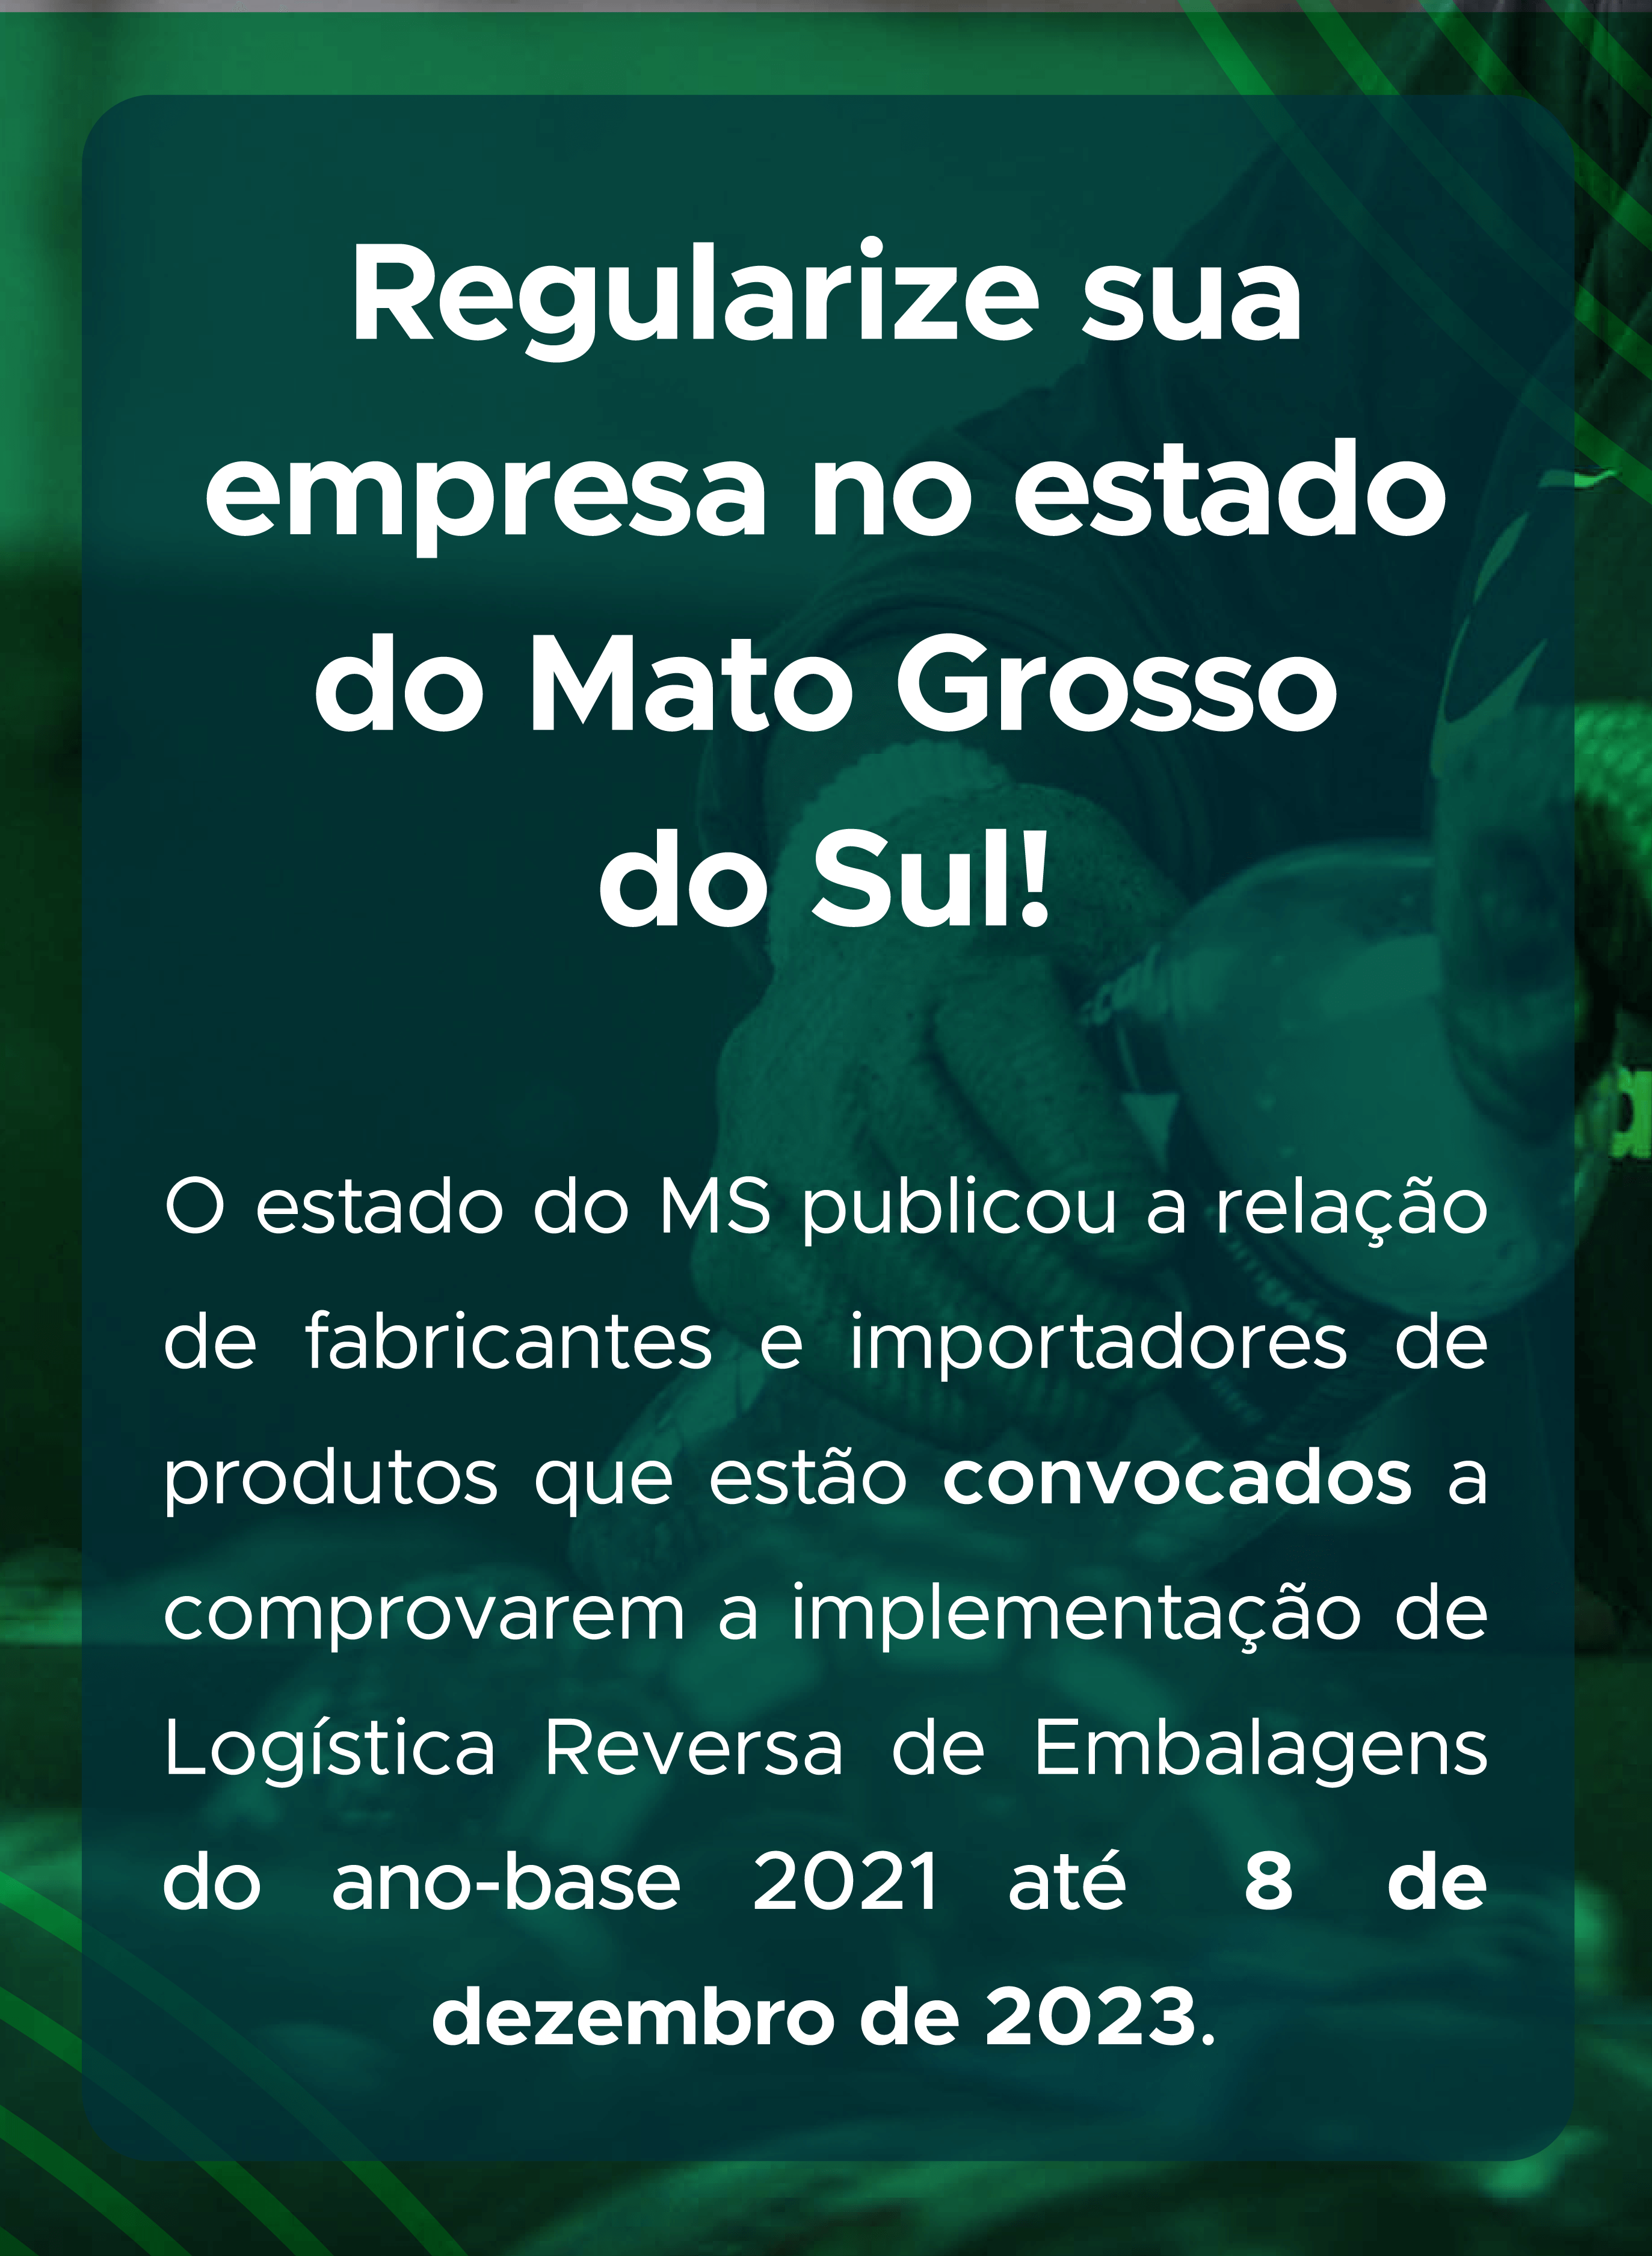 Regularize sua empresa no estado do Mato Grosso do Sul!